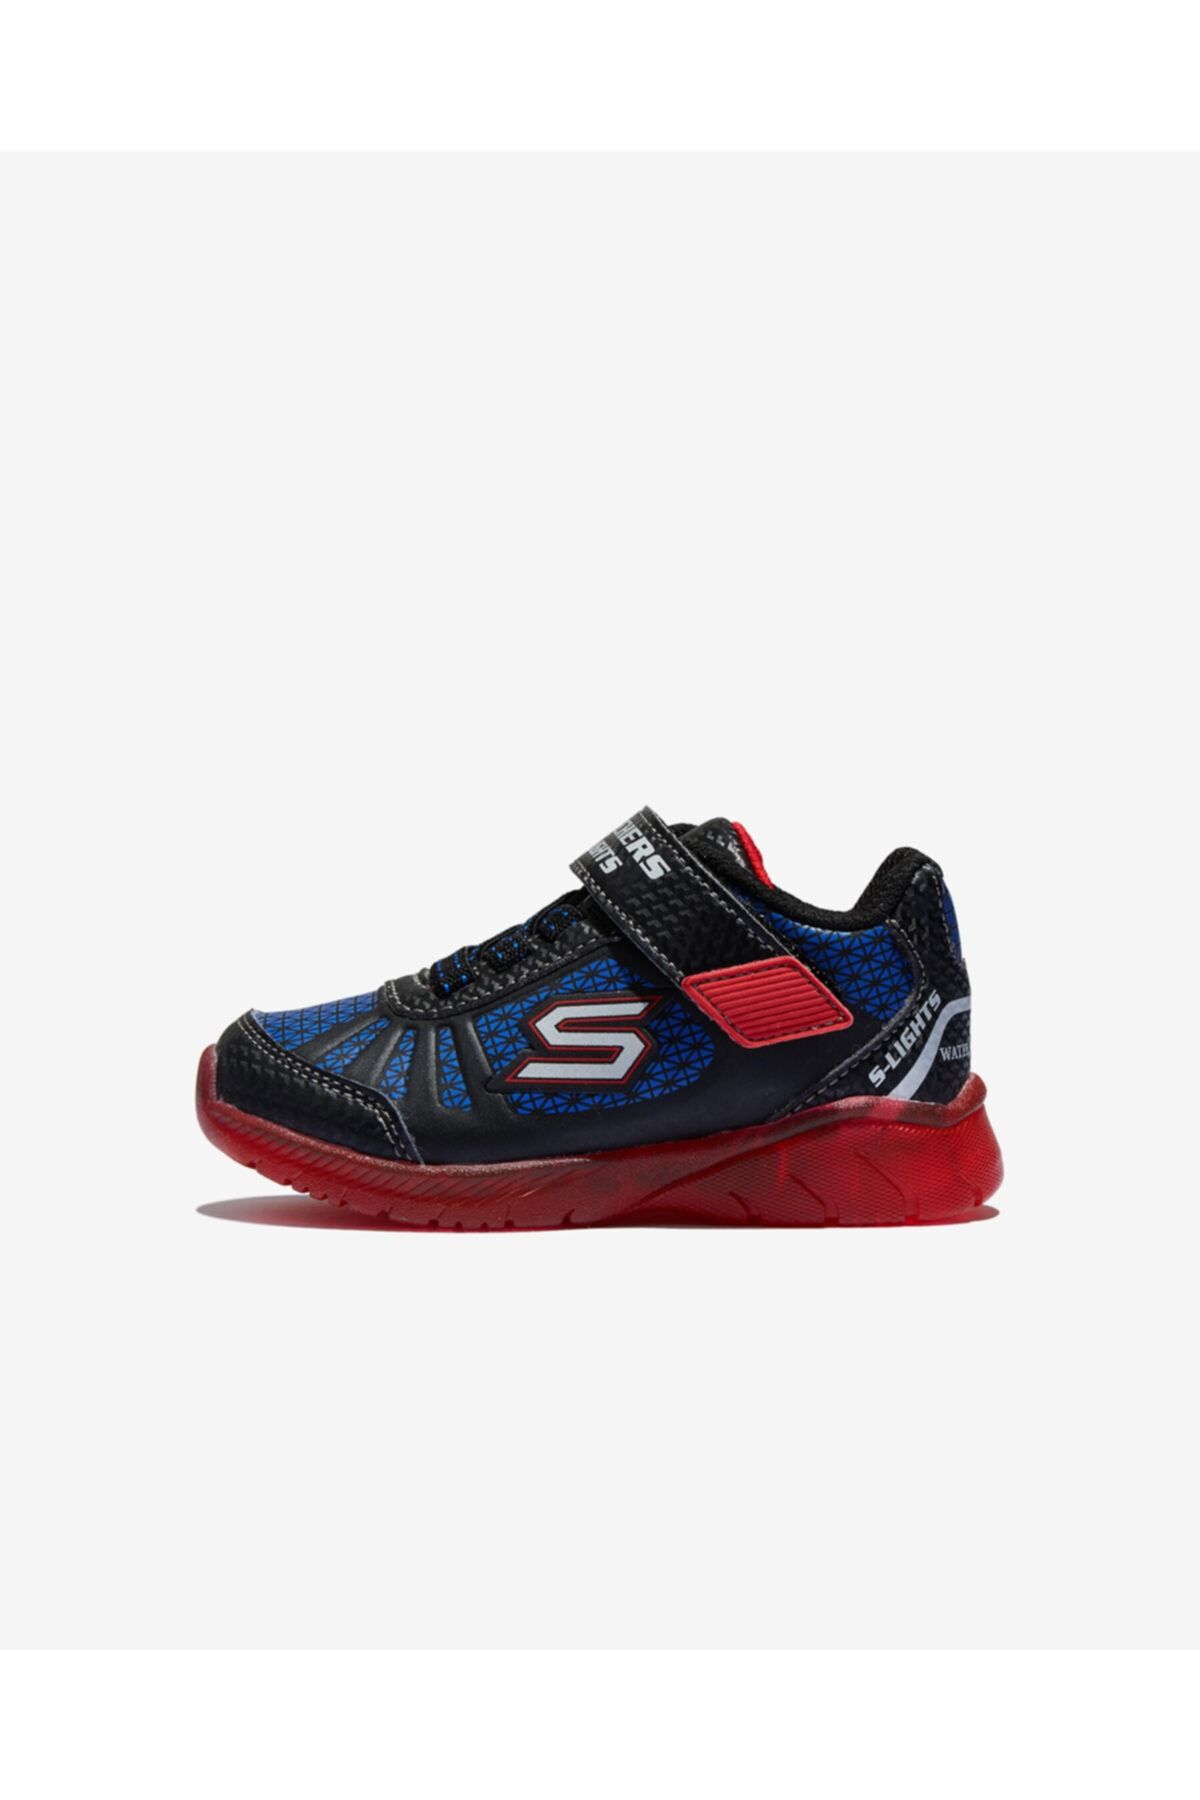 Skechers İLLUMİ-BRİGHTS Küçük Erkek Çocuk Siyah Spor Ayakkabı - 401520N BKRB